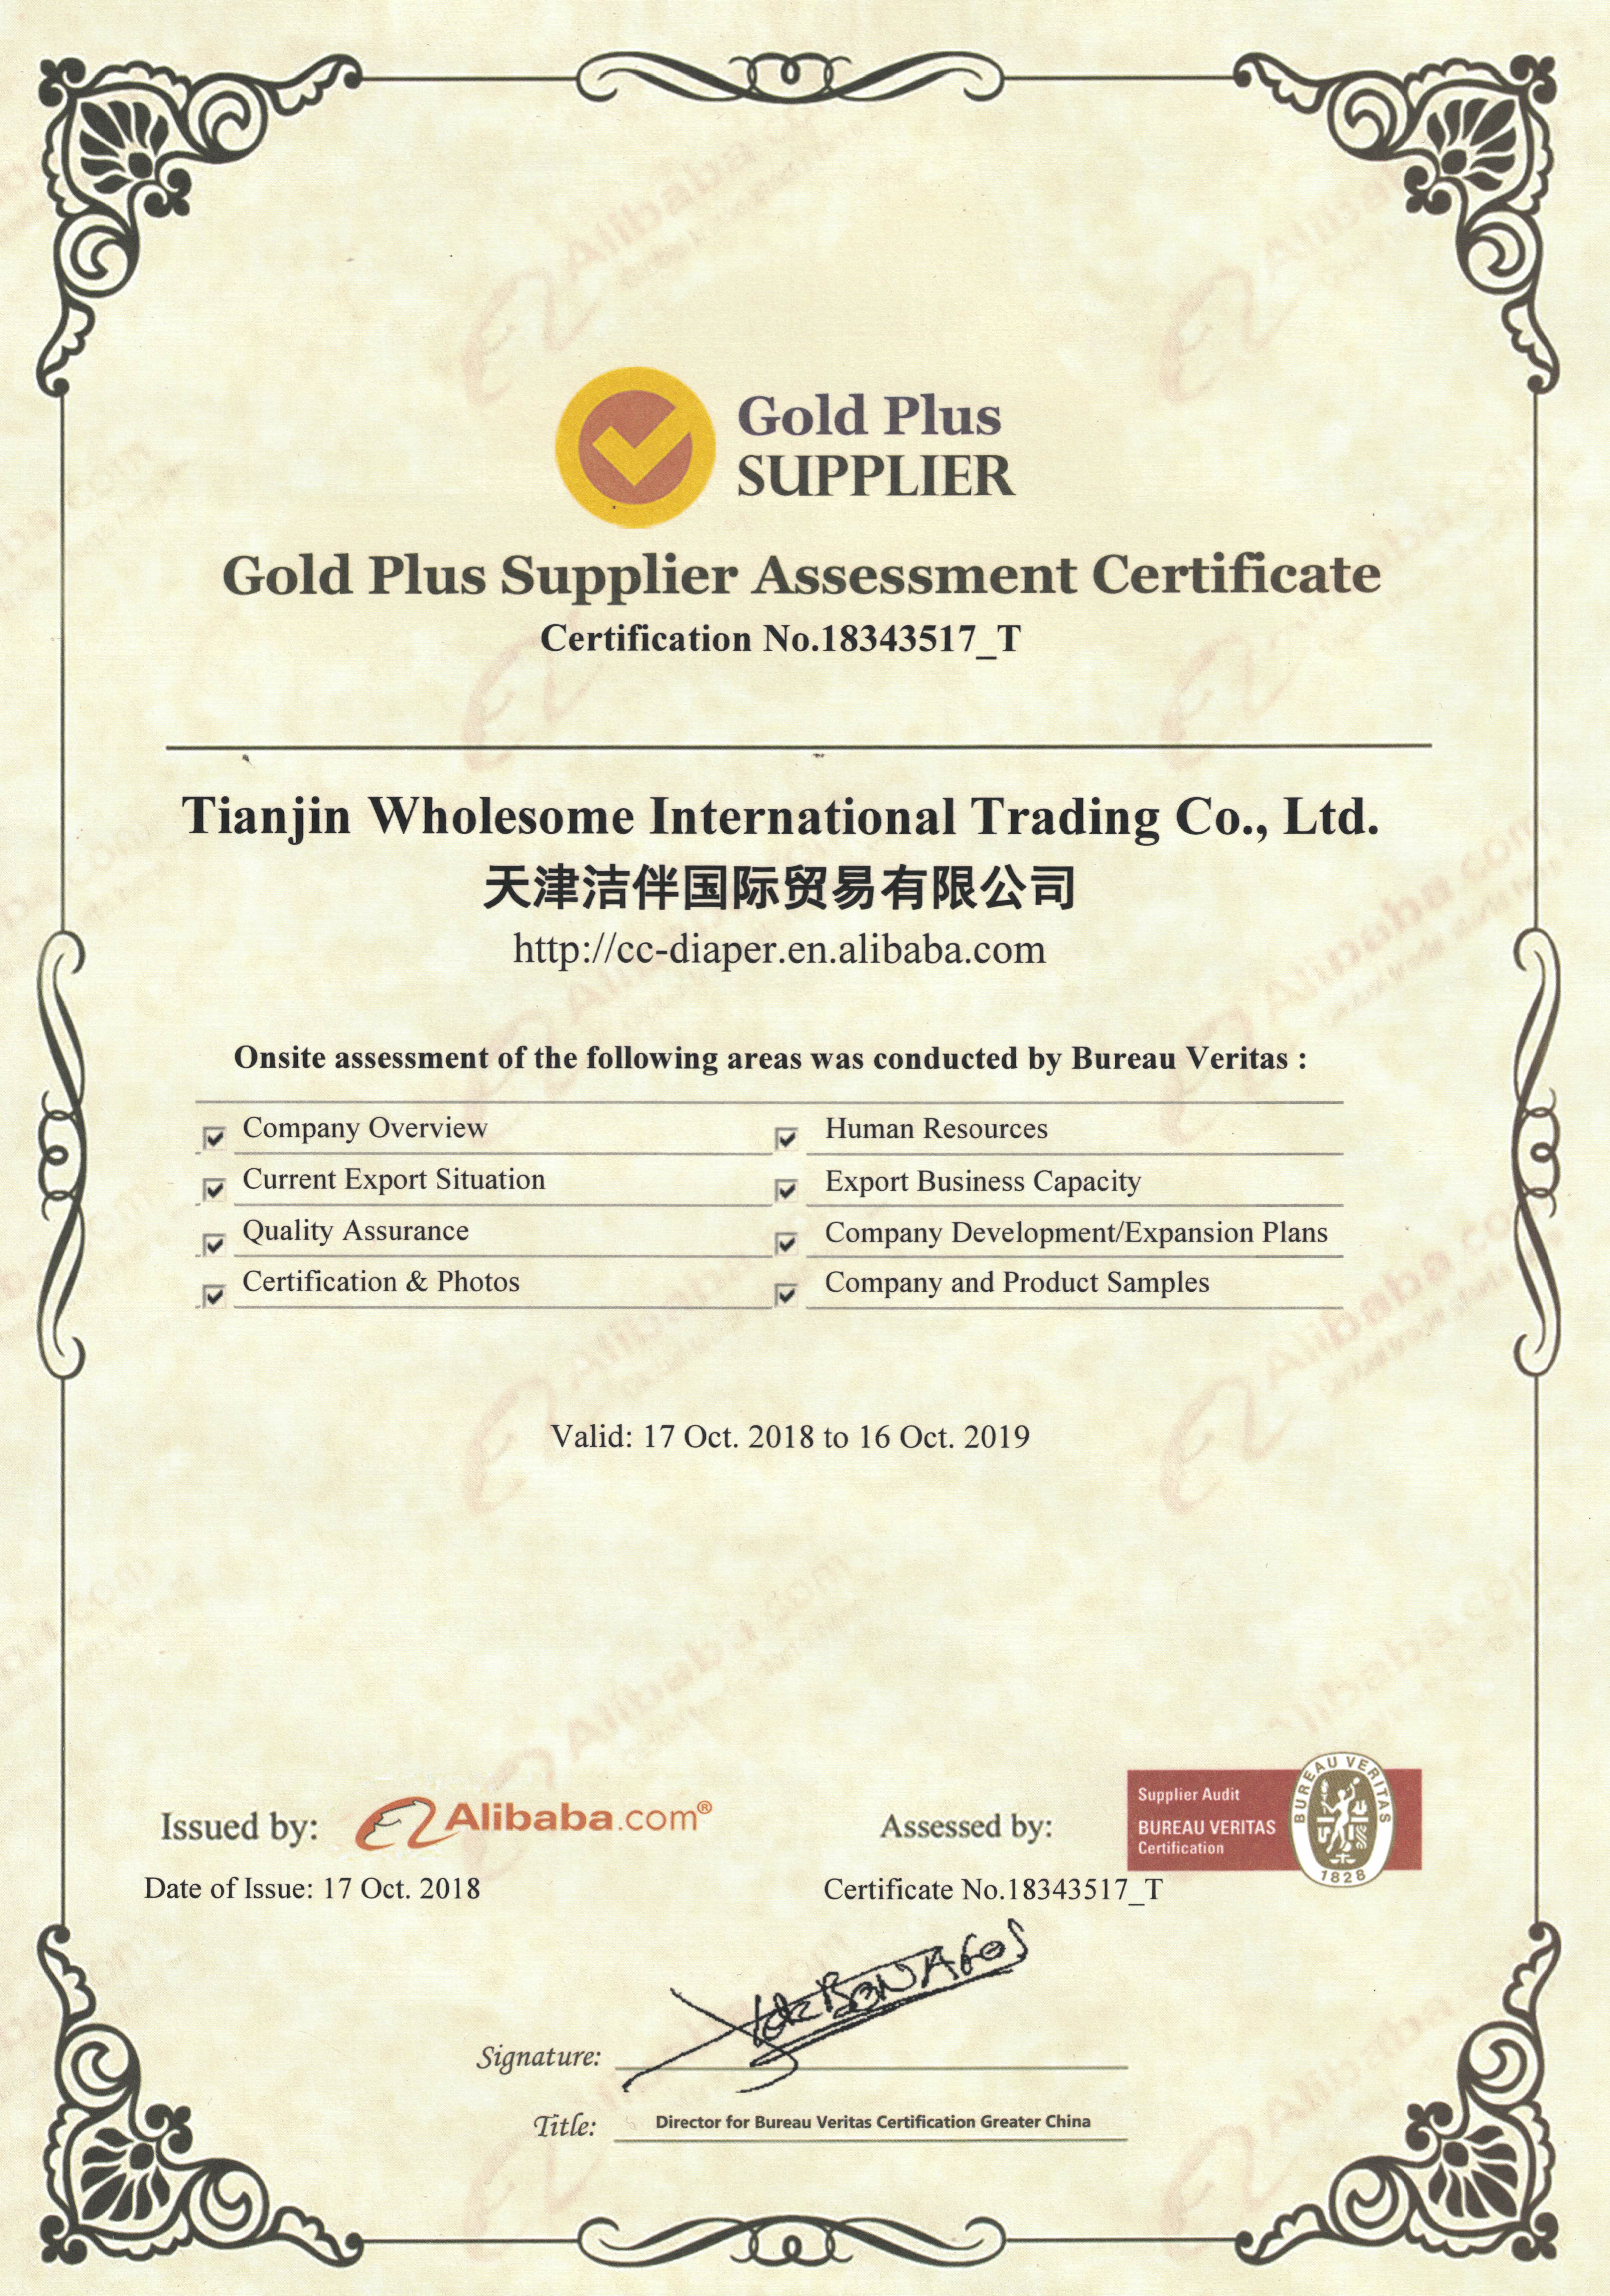 Gold Plus Supplier (Alibaba und BV-Zertifizierung)